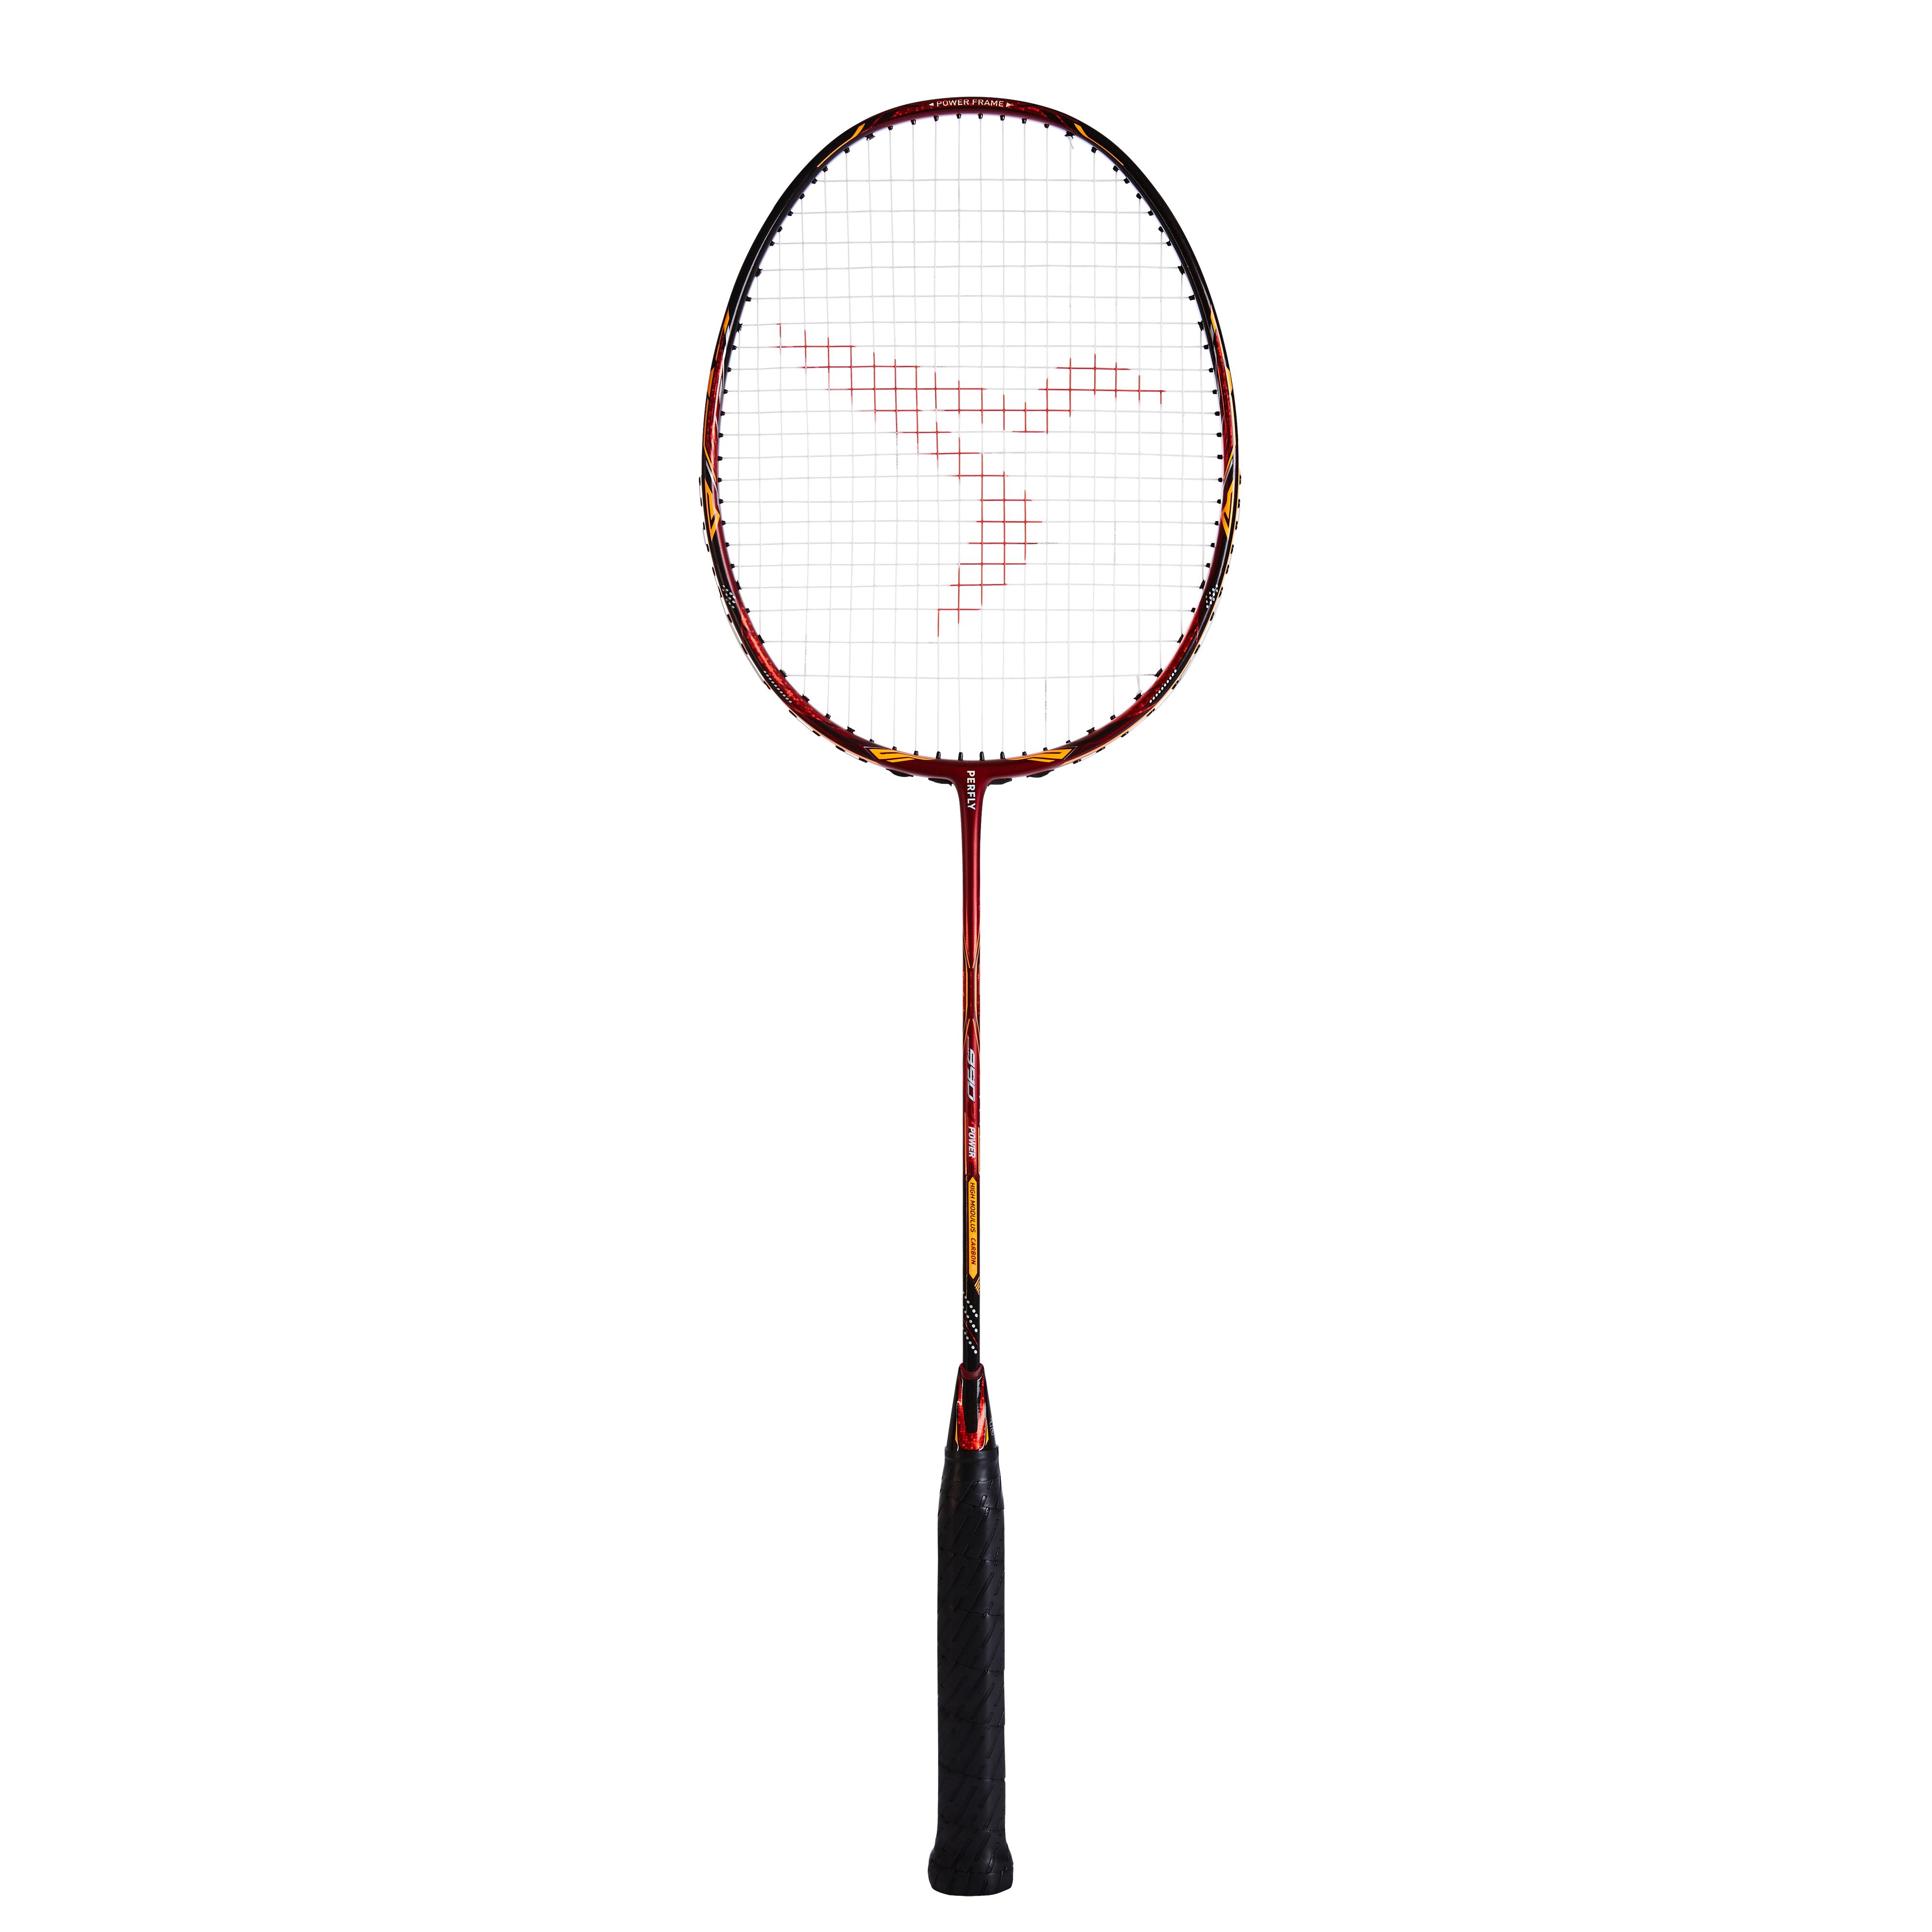 Rachetă Badminton BR 990